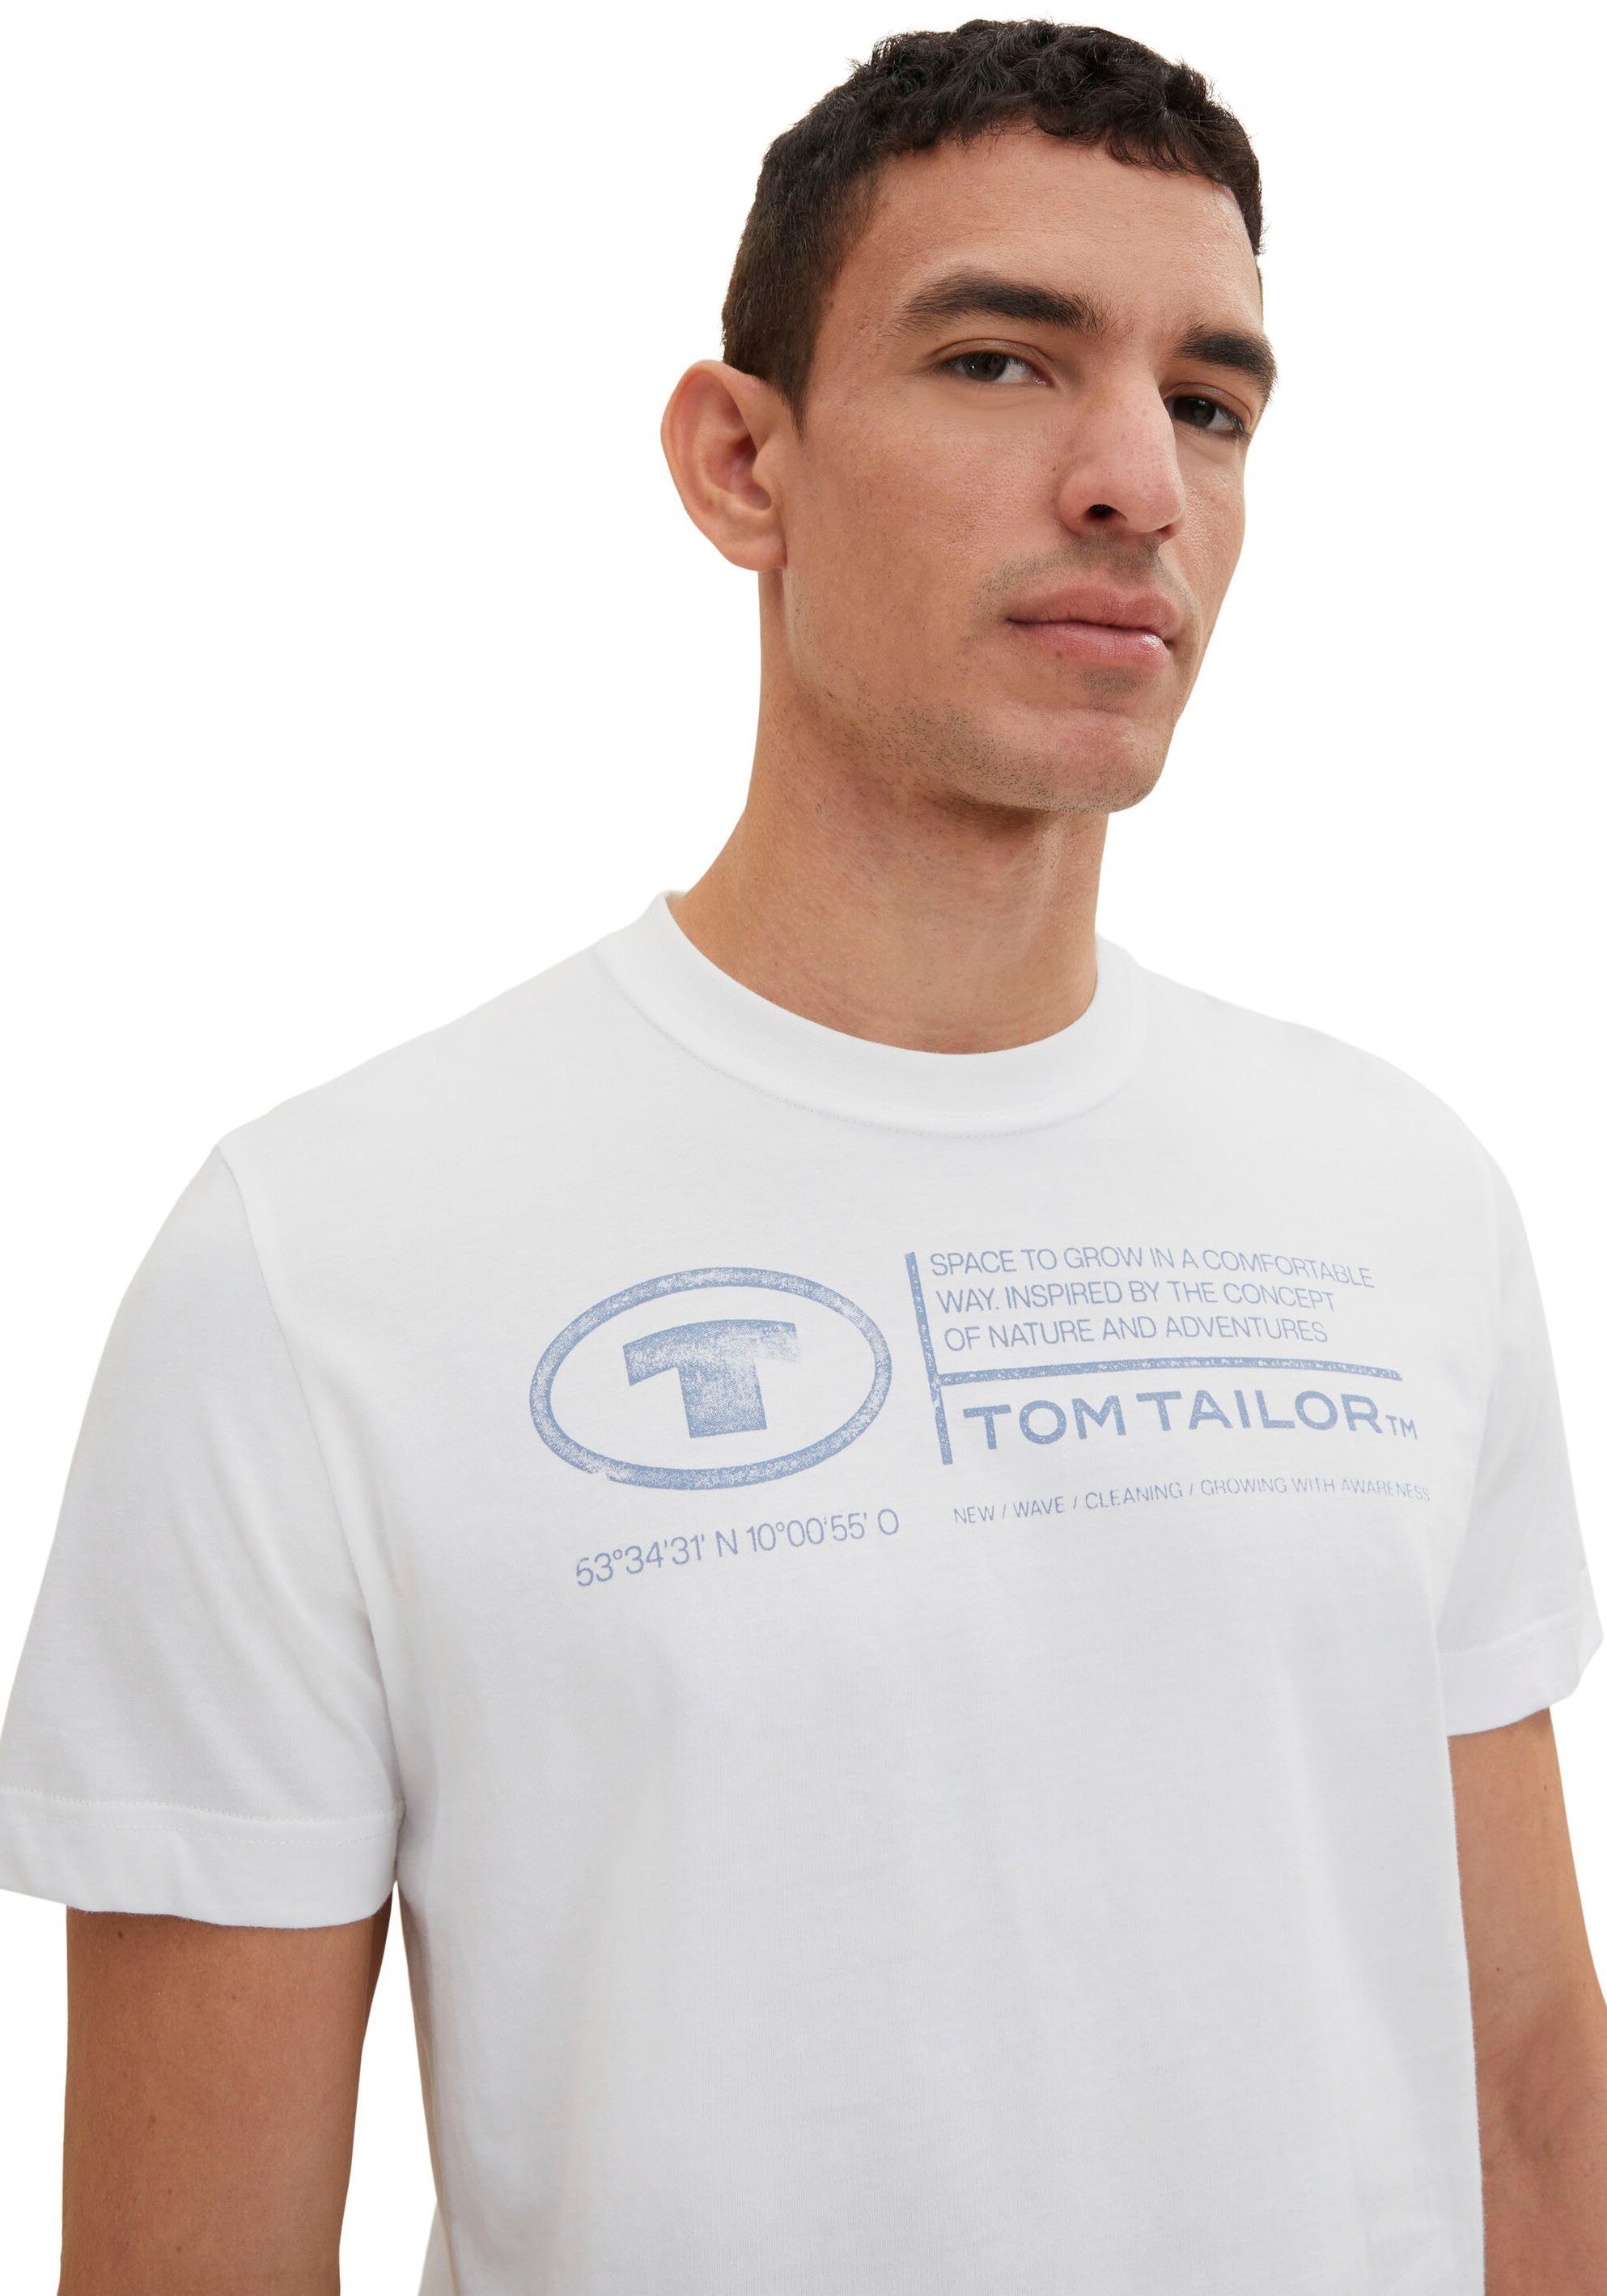 Tailor Tom Print-Shirt weiß Frontprint TAILOR T-Shirt Herren TOM